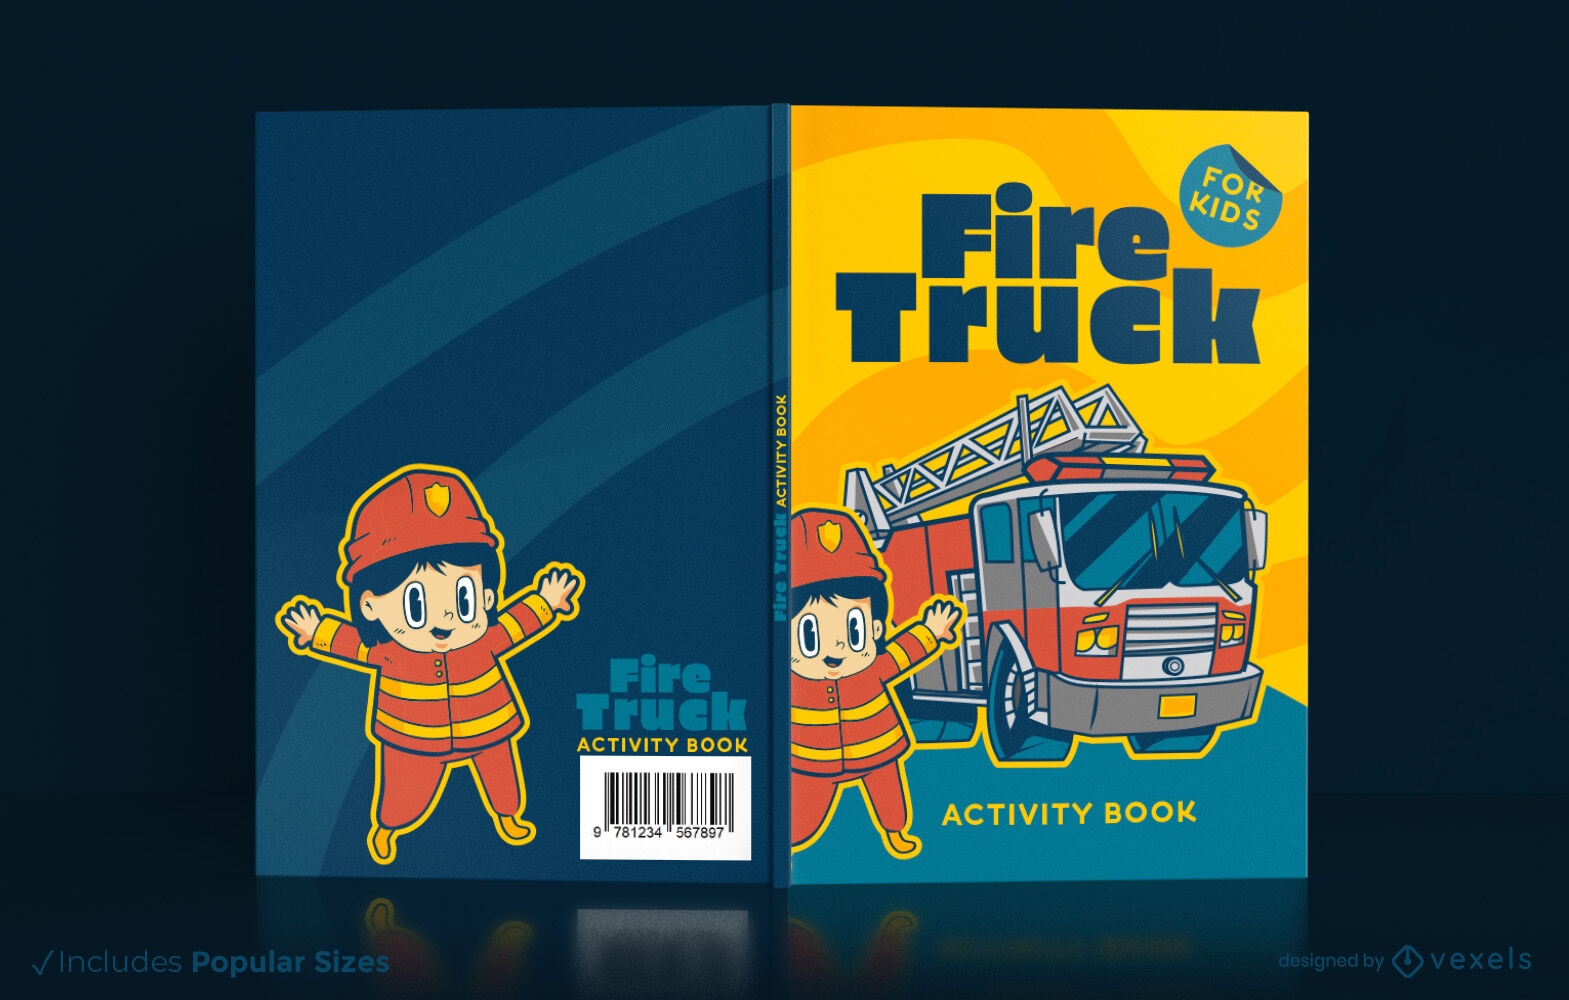 Fire truck book cover design KDP